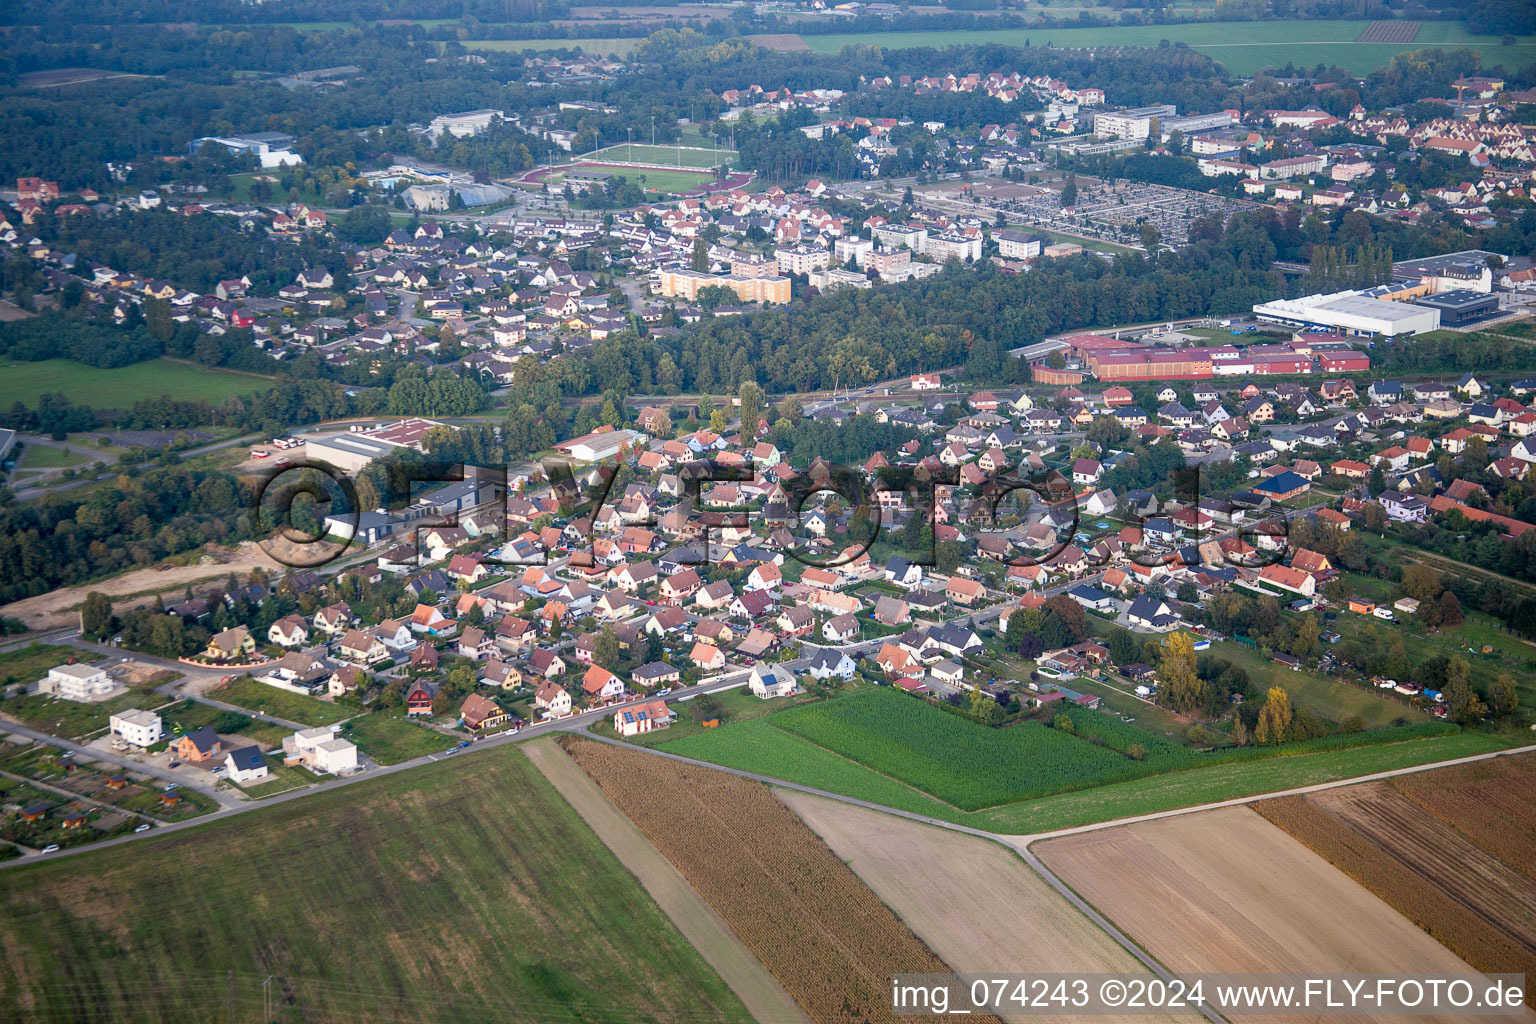 Luftbild von Ortsansicht der Straßen und Häuser der Wohngebiete in Bischwiller in Grand Est im Bundesland Bas-Rhin, Frankreich